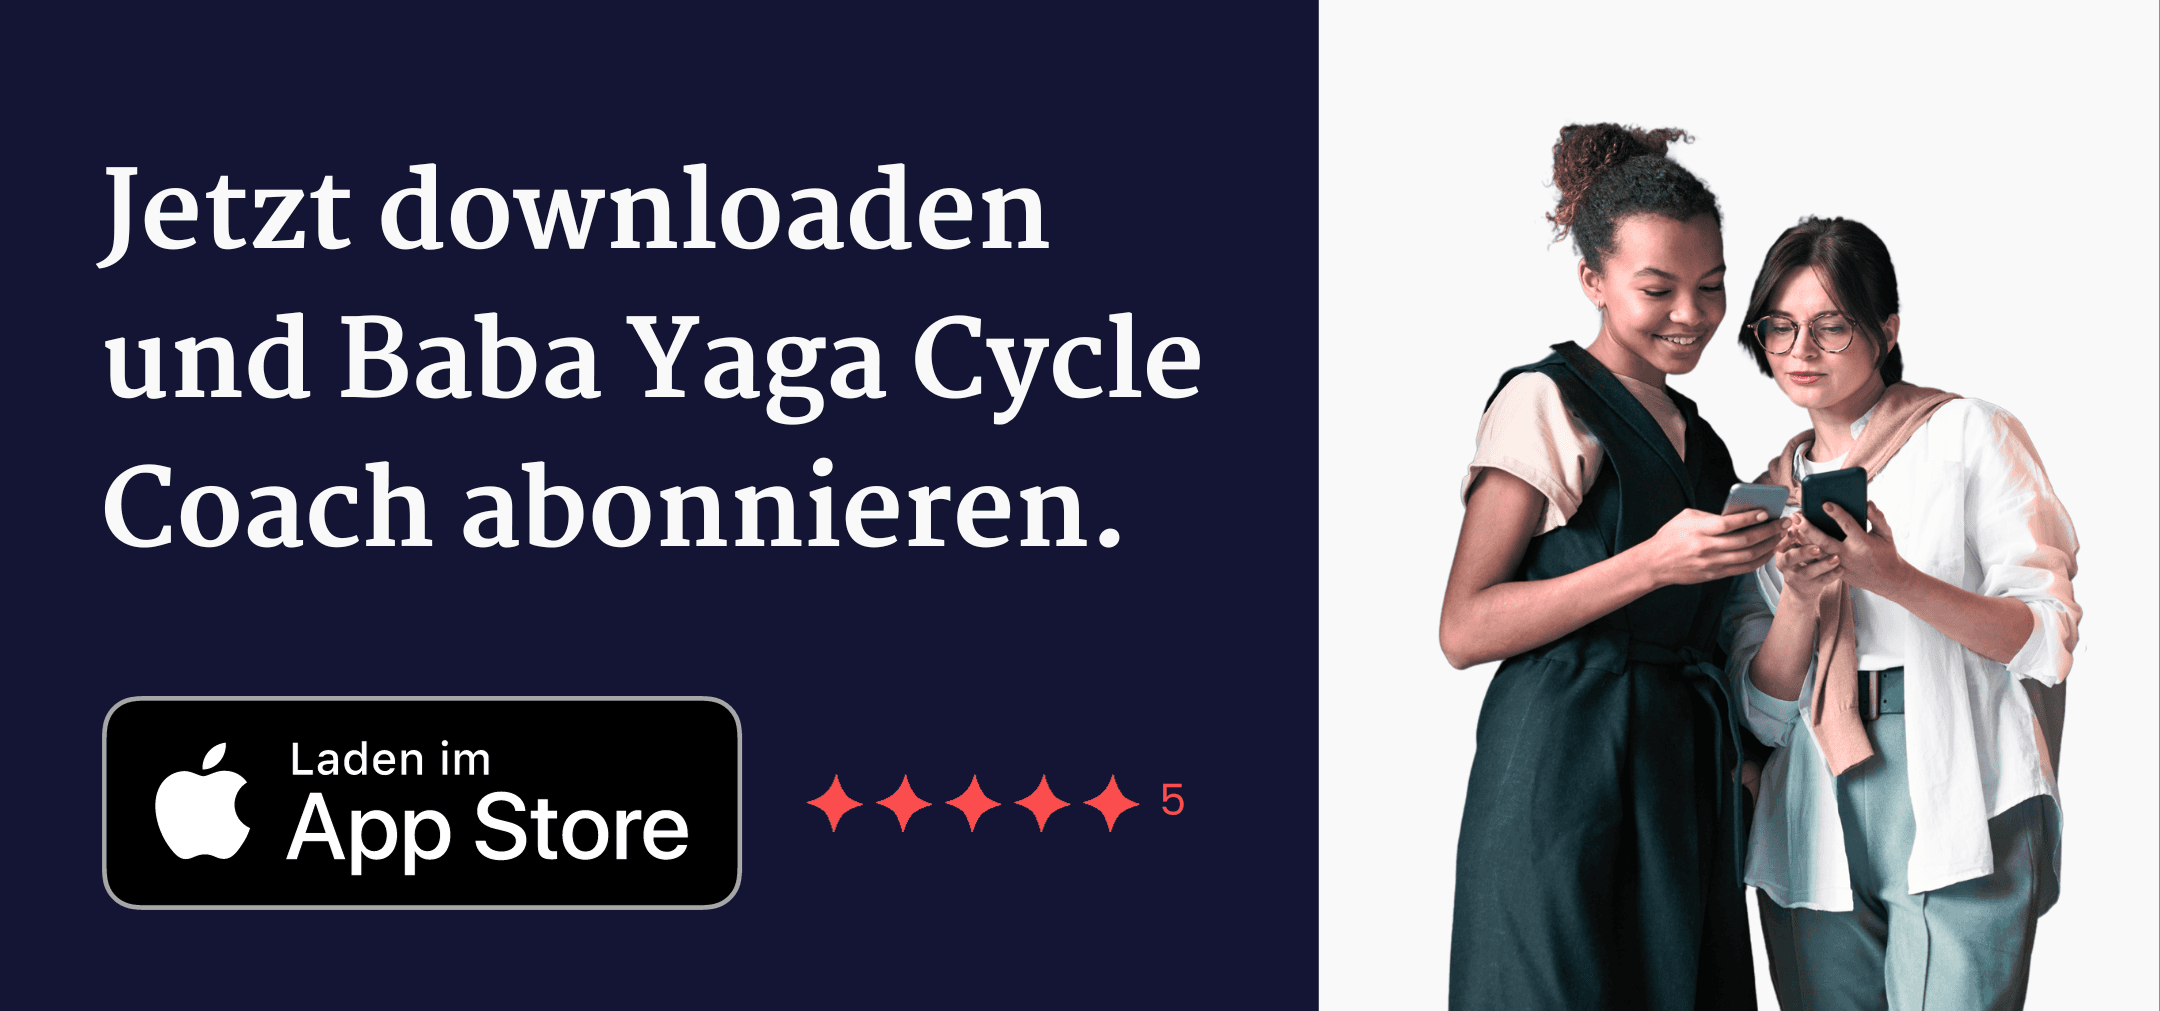 Jetzt downloaden und Baba Yaga Cycle Coach abonnieren.